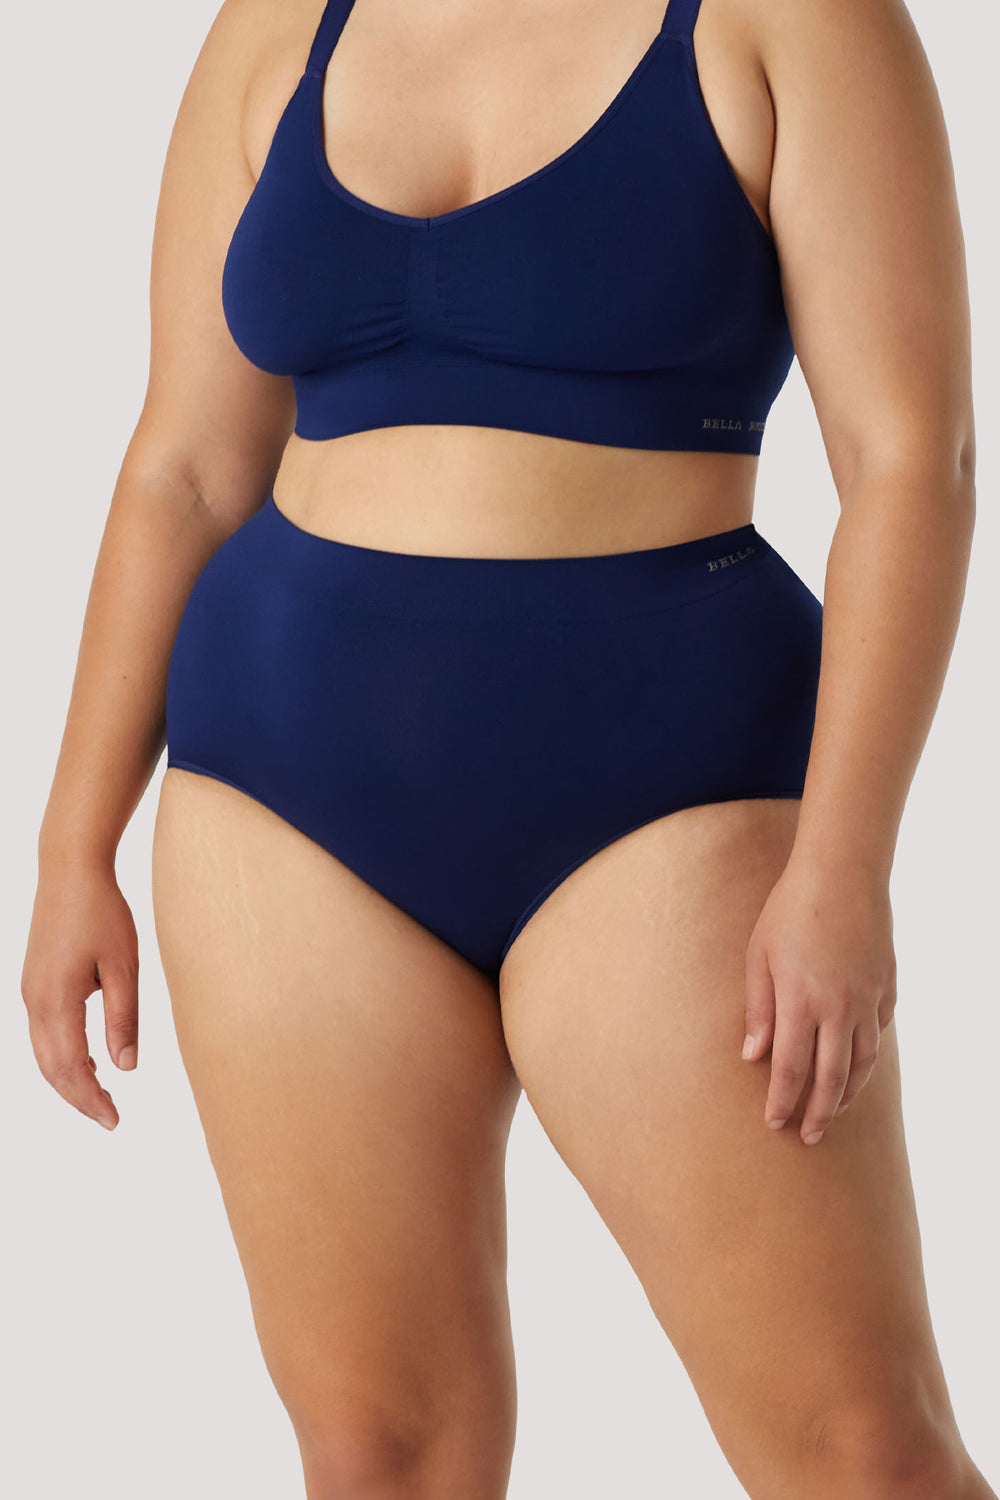 Women's slimming & firming high waist shapewear underwear | Bella Bodies Australia | Navy | Front